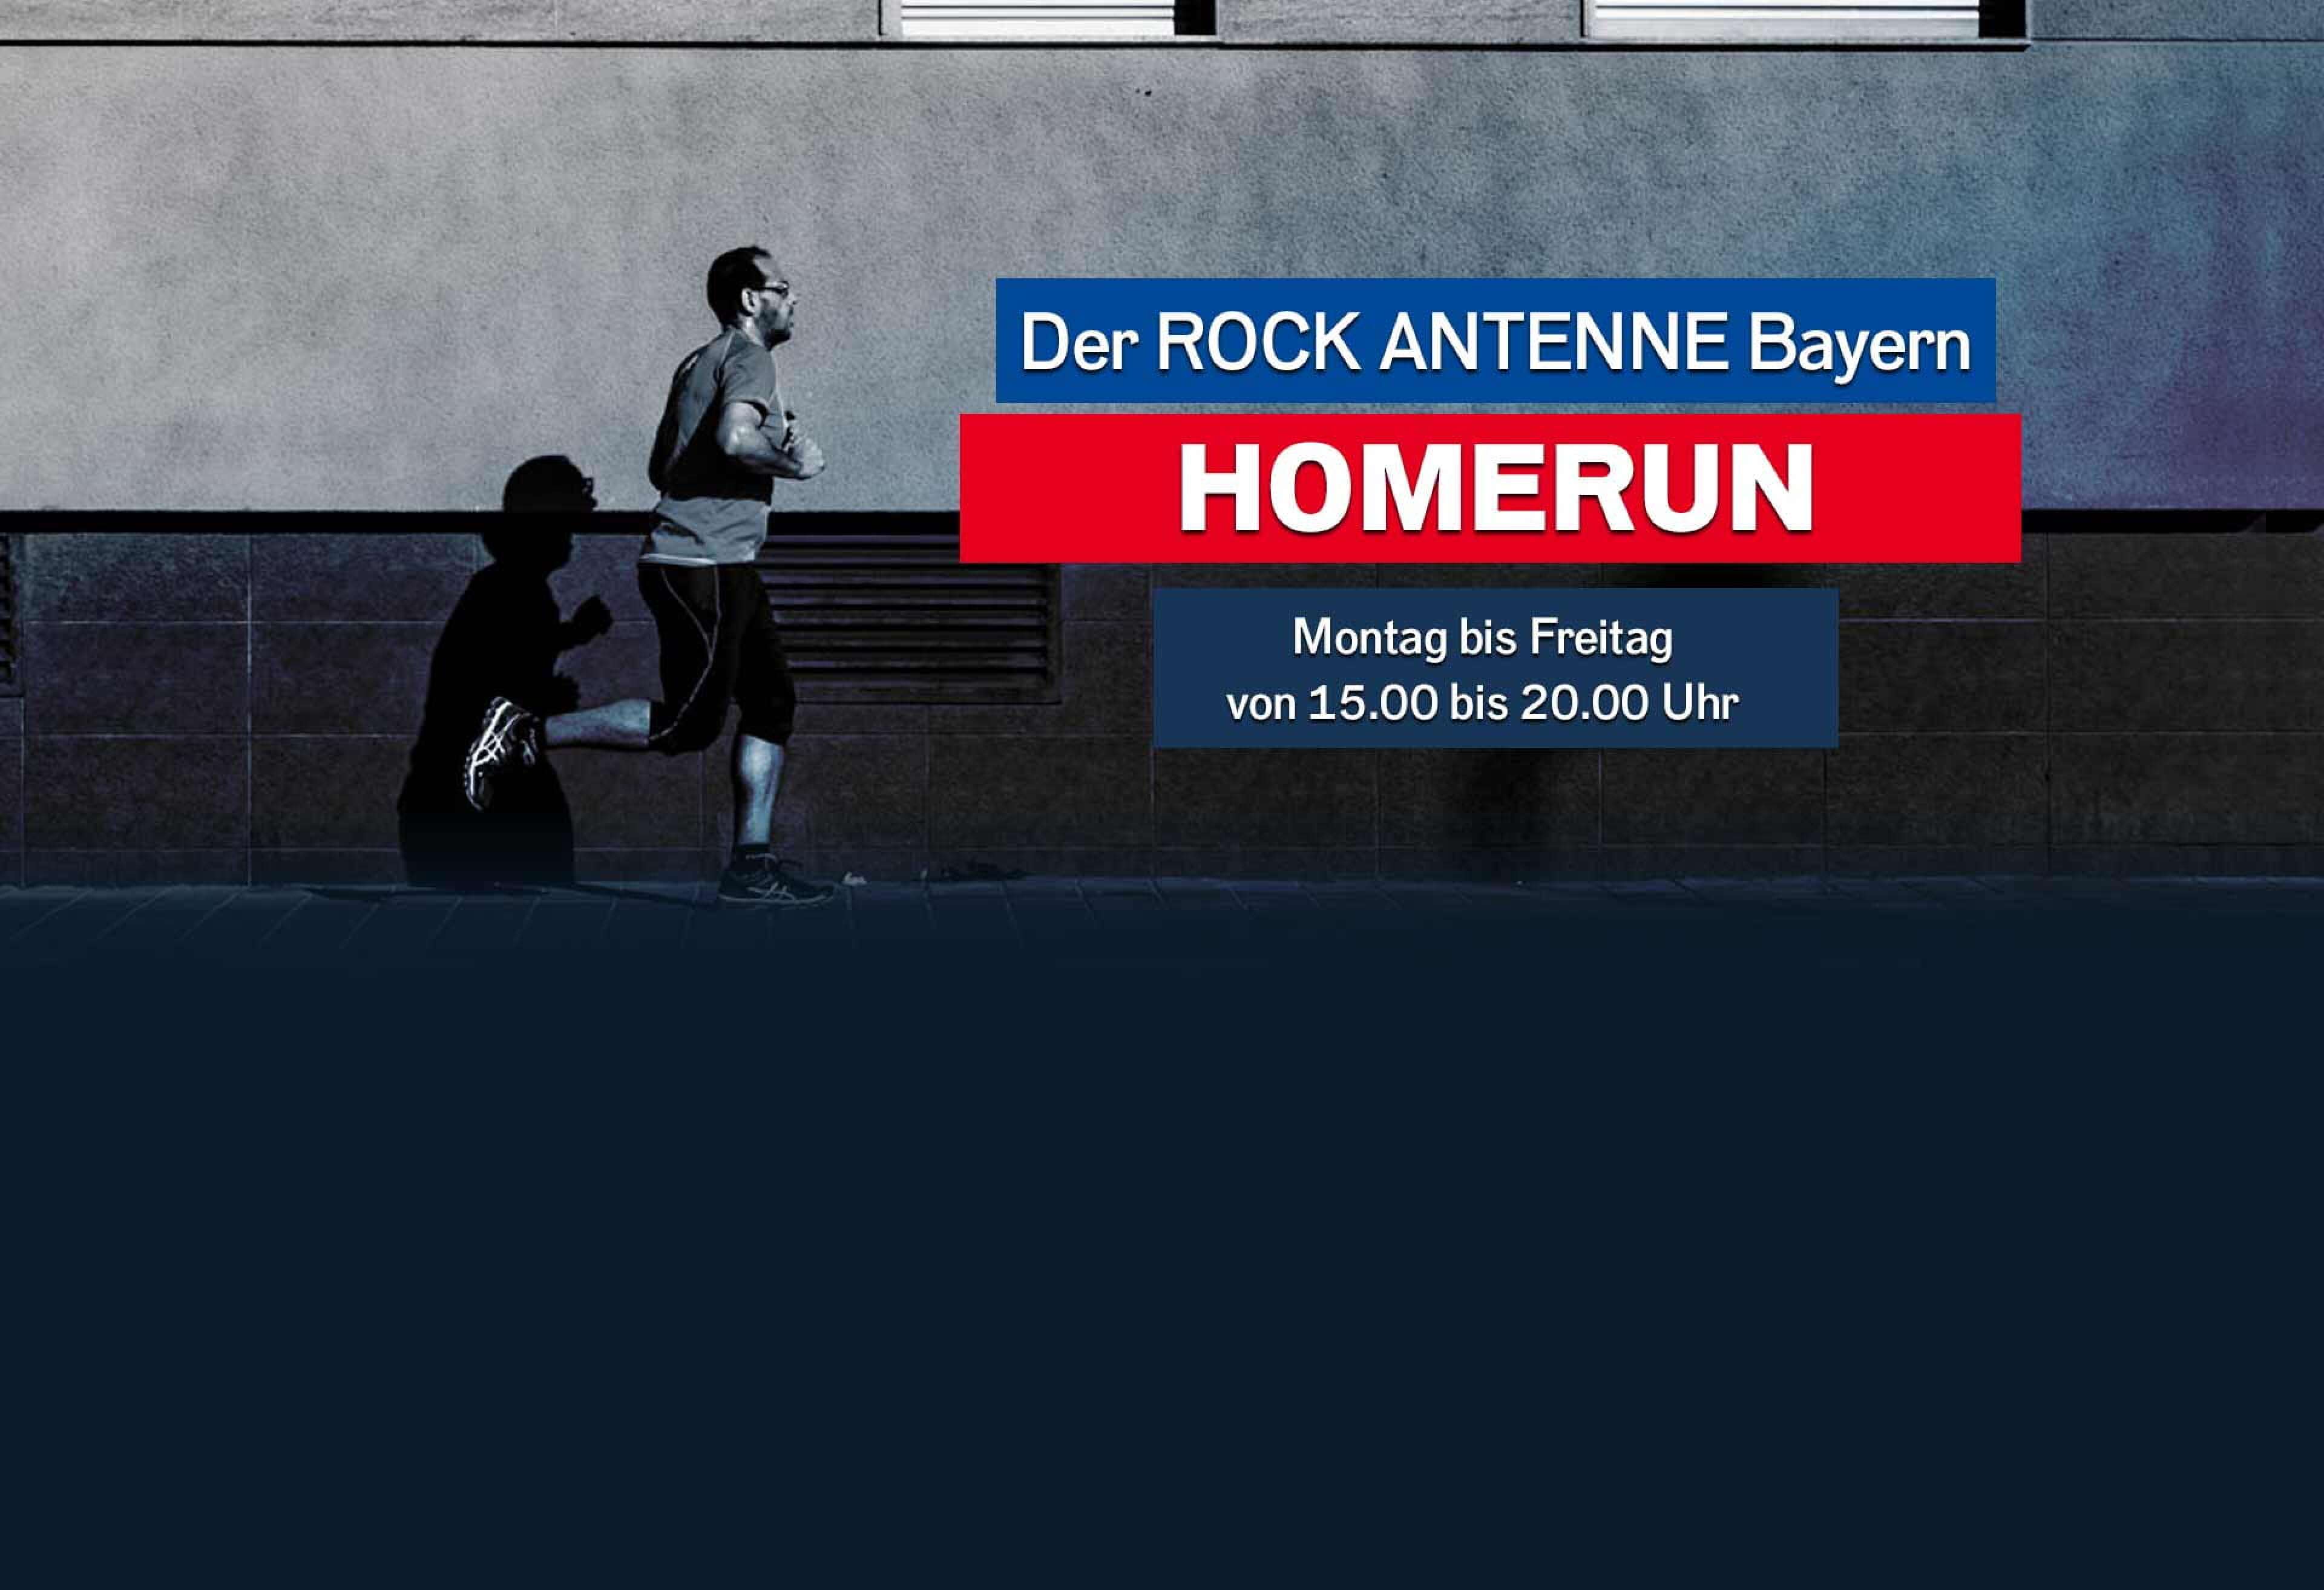 Bild eines Mannes, der an einer Hauswand entlang joggt, Text "Der ROCK ANTENNE Bayern Homerun, Montag bis Freitag 15 bis 20 Uhr"